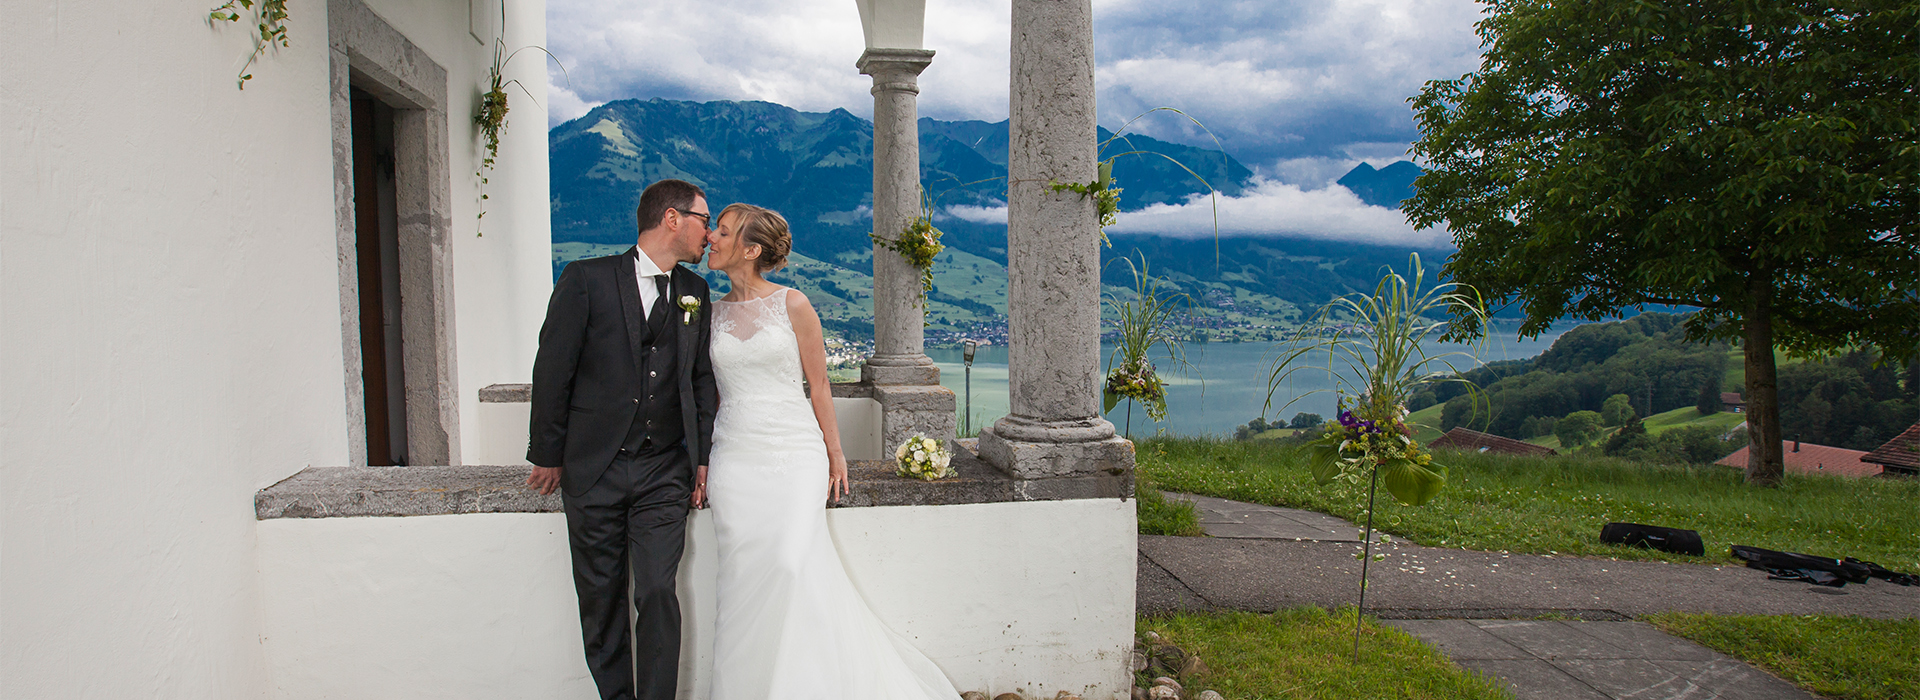 Hochzeitsfoto von Claudia & Oliver in Sarnen, Schweiz